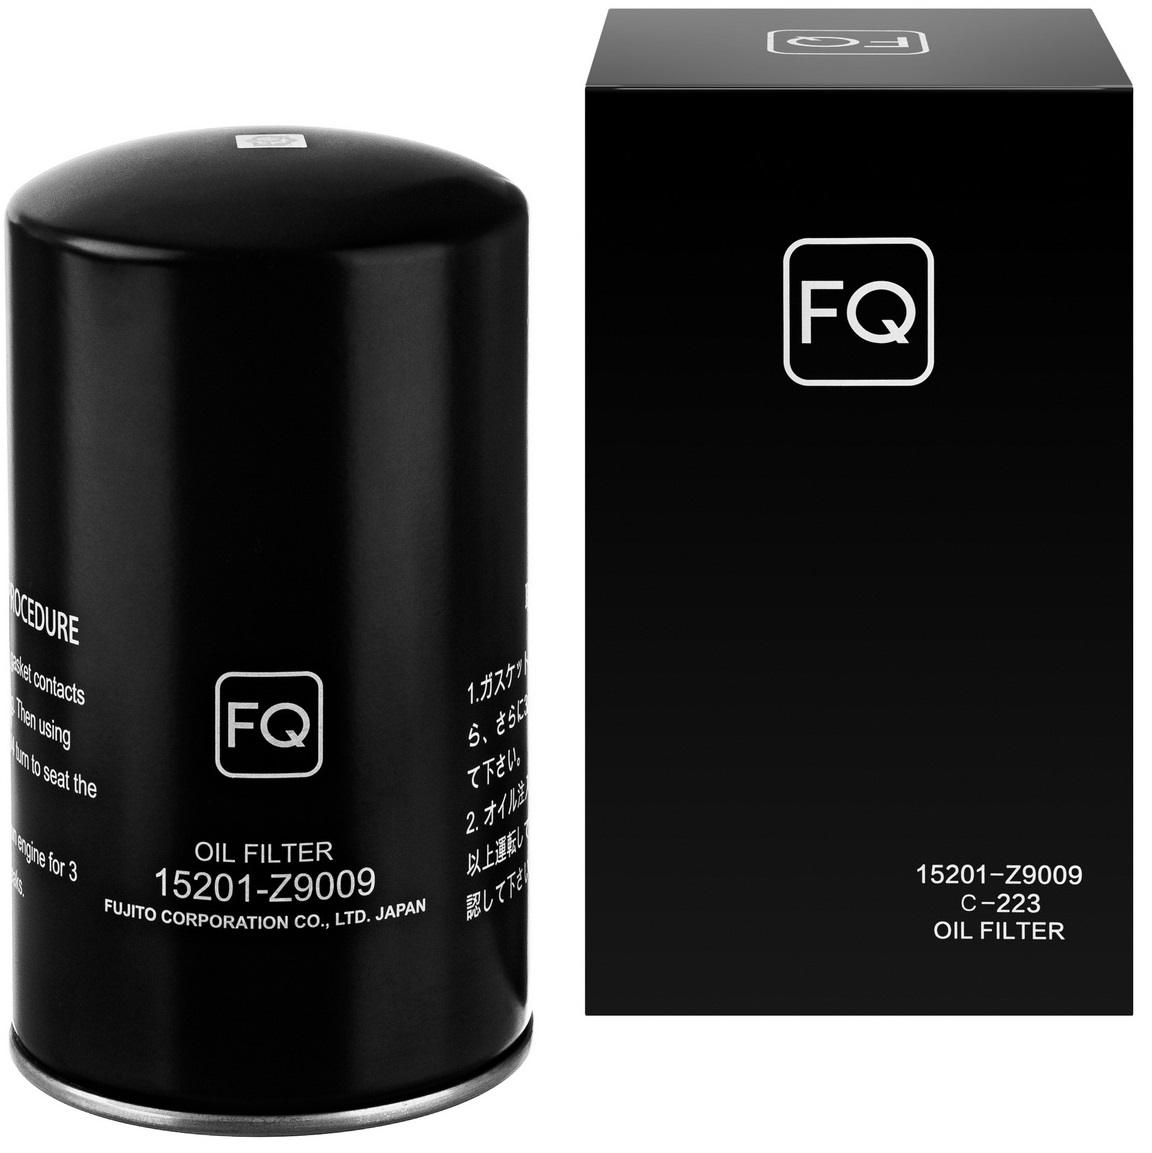 FQ, Фильтр масляный, C-223/15201-Z9009, Япония